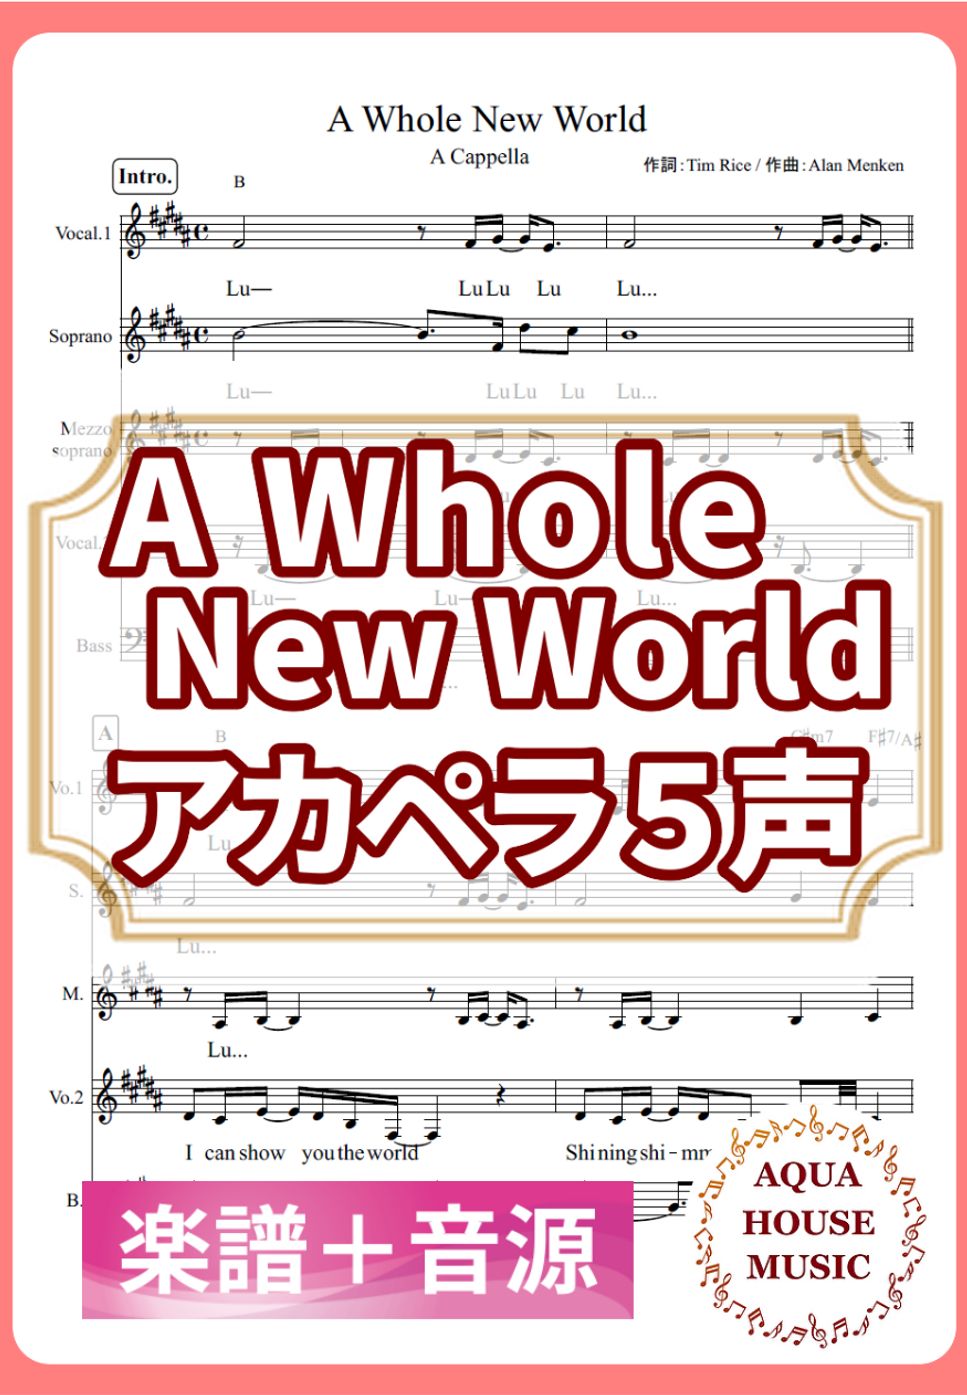 ディズニー映画「アラジン」 - A Whole New World (アカペラ楽譜＋練習音源セット販売) by 飯田 亜紗子